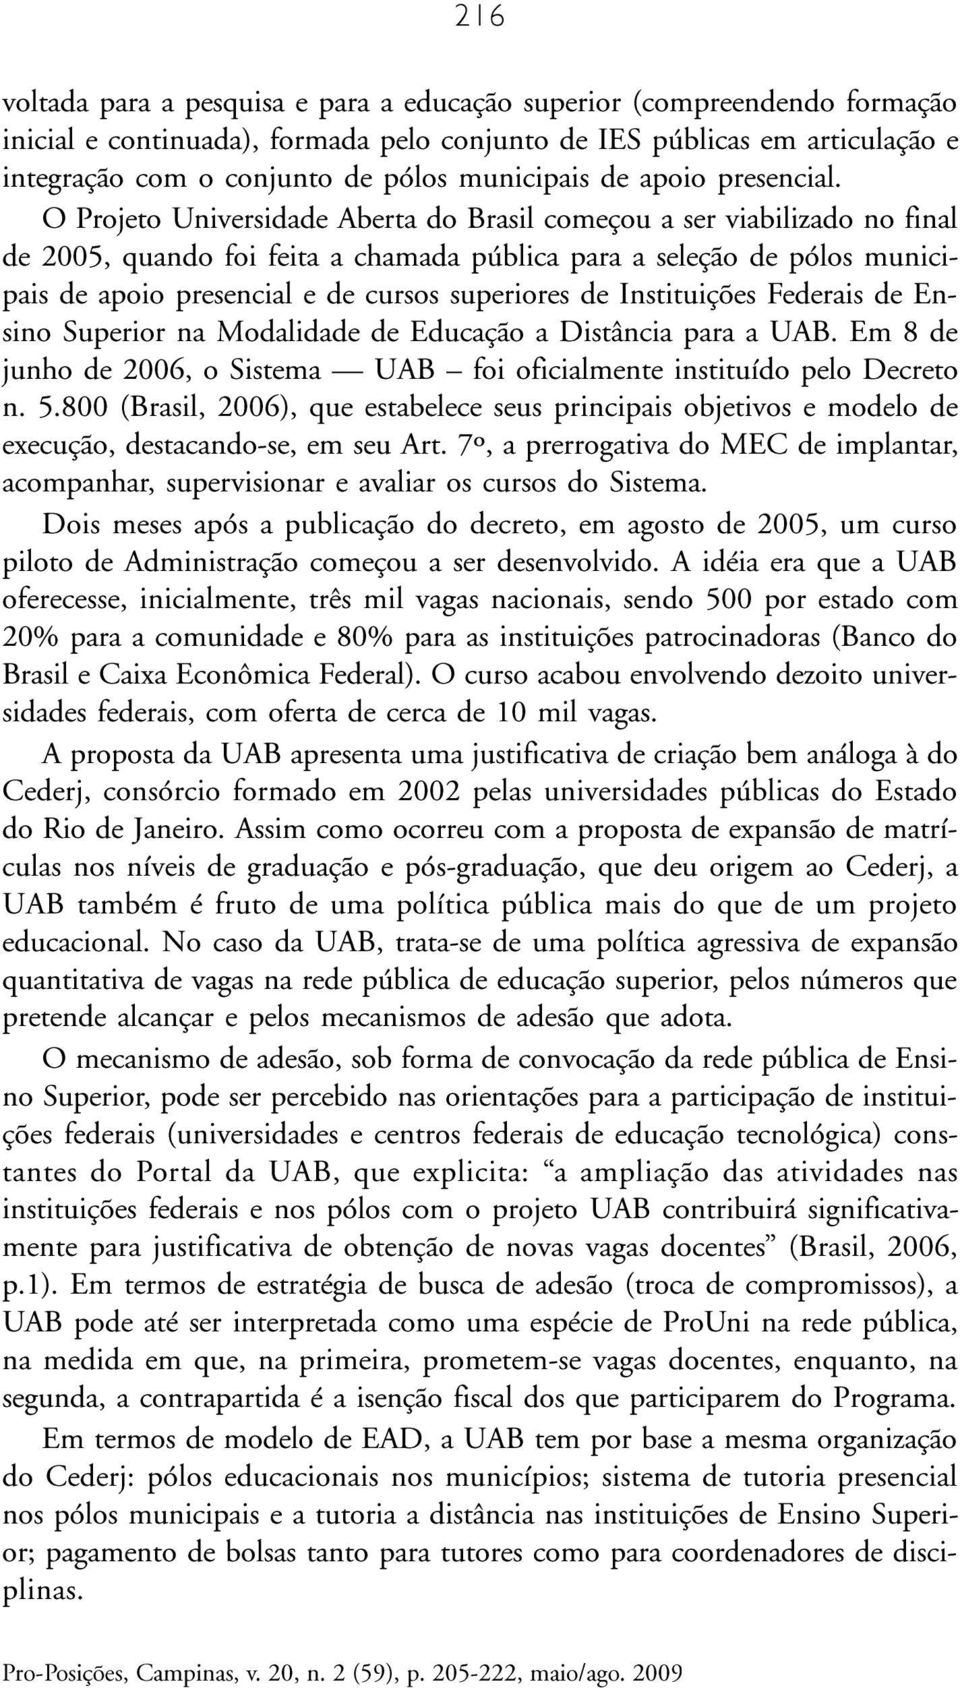 O Projeto Universidade Aberta do Brasil começou a ser viabilizado no final de 2005, quando foi feita a chamada pública para a seleção de pólos municipais de apoio presencial e de cursos superiores de